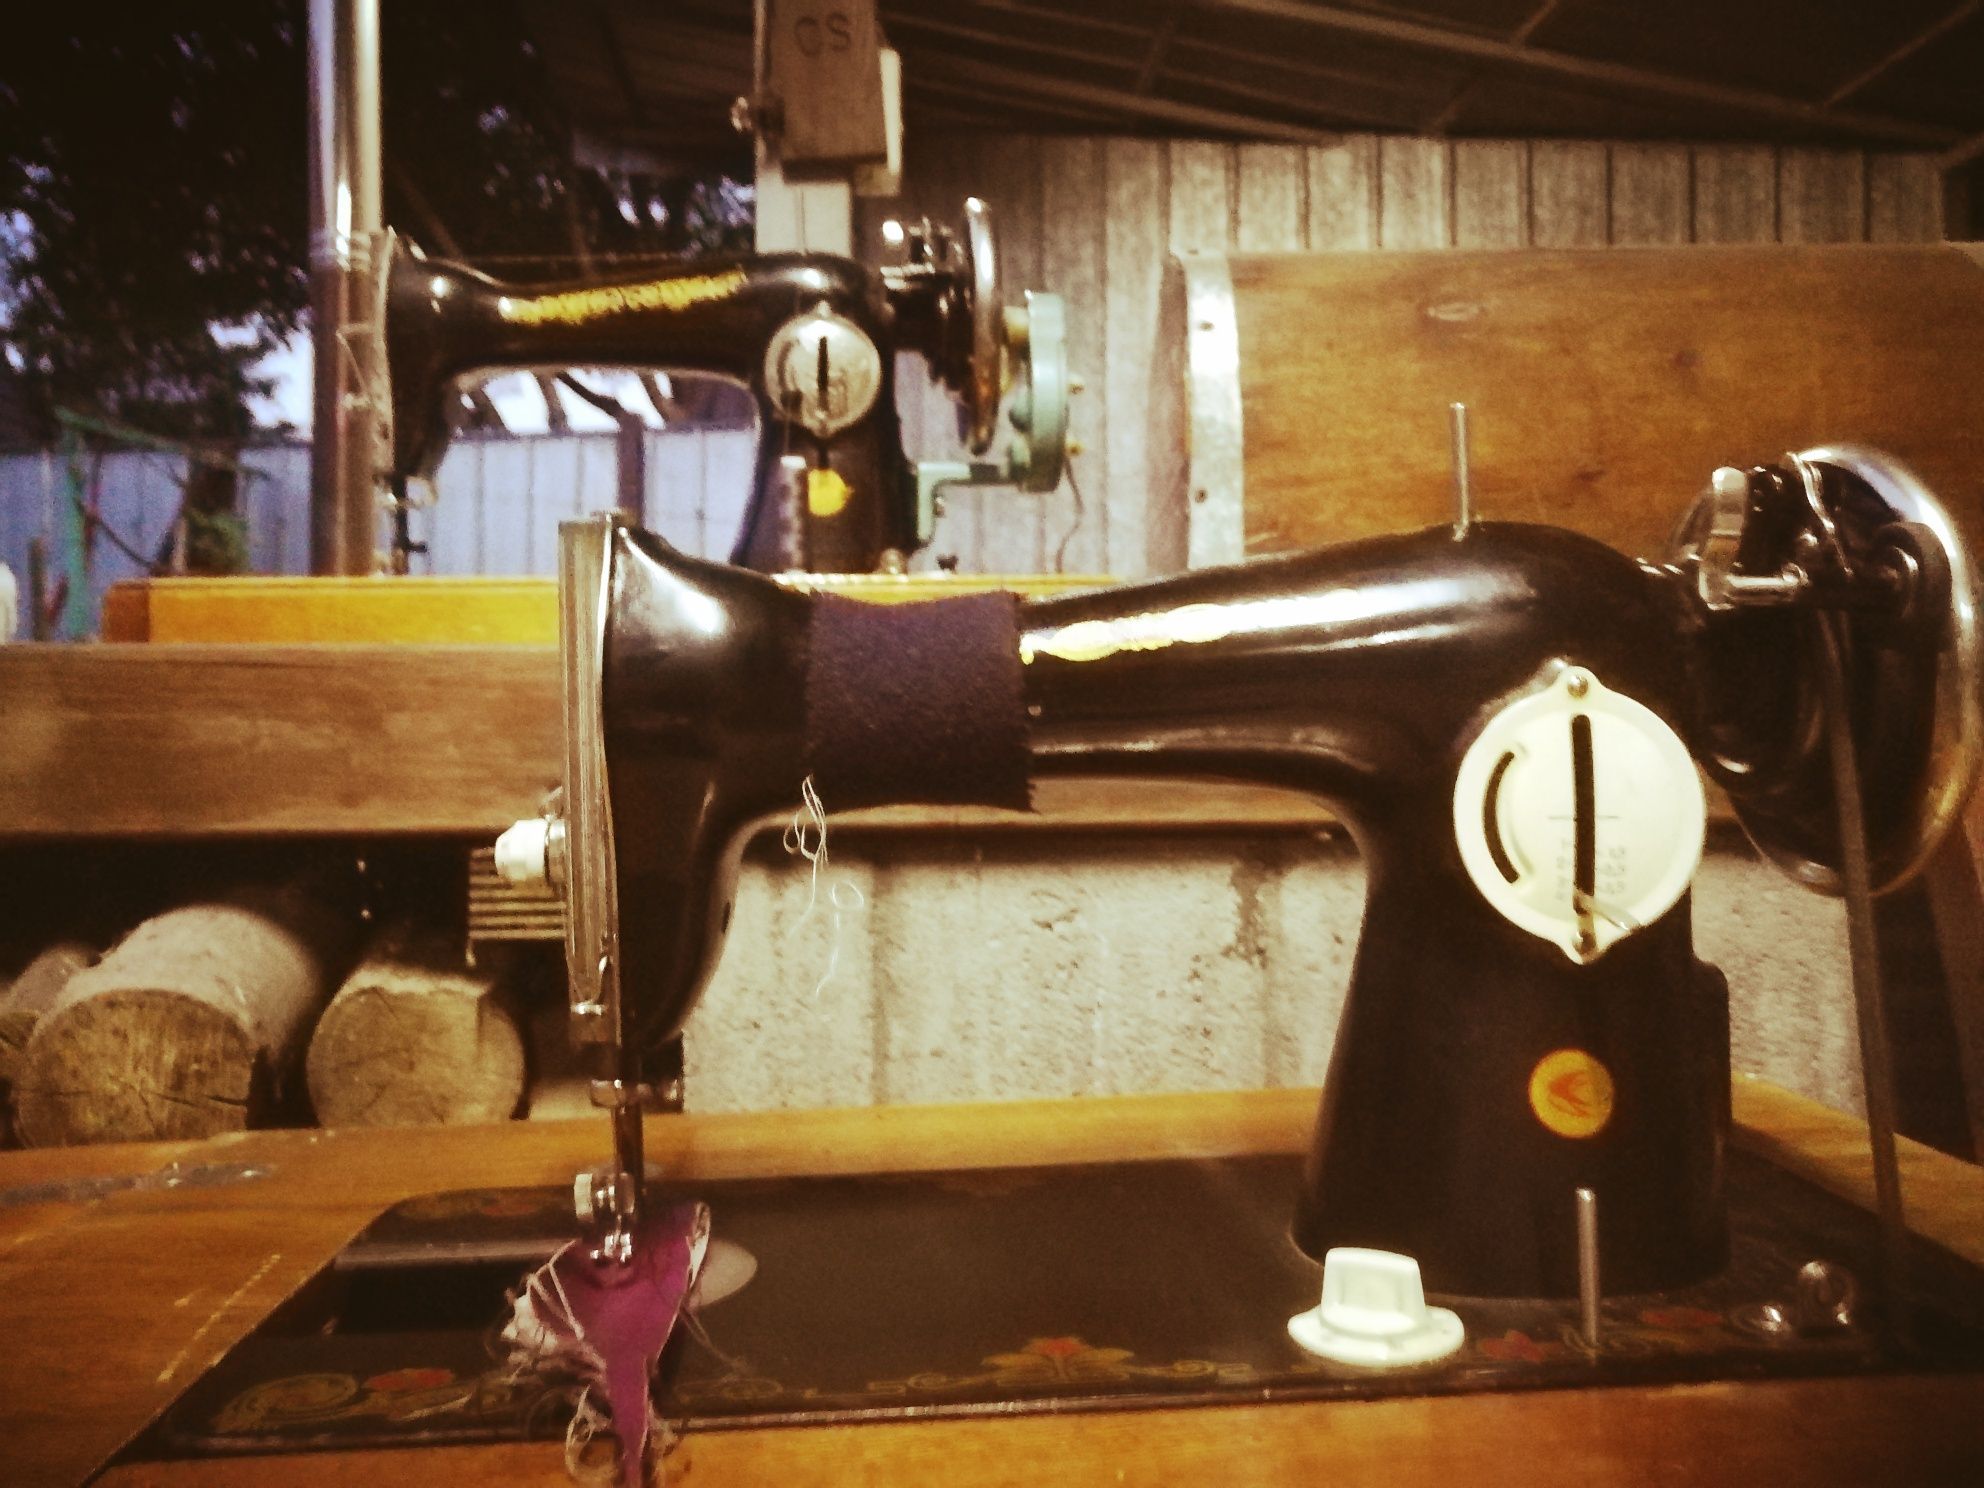 Ремонт бытовых швейных машин